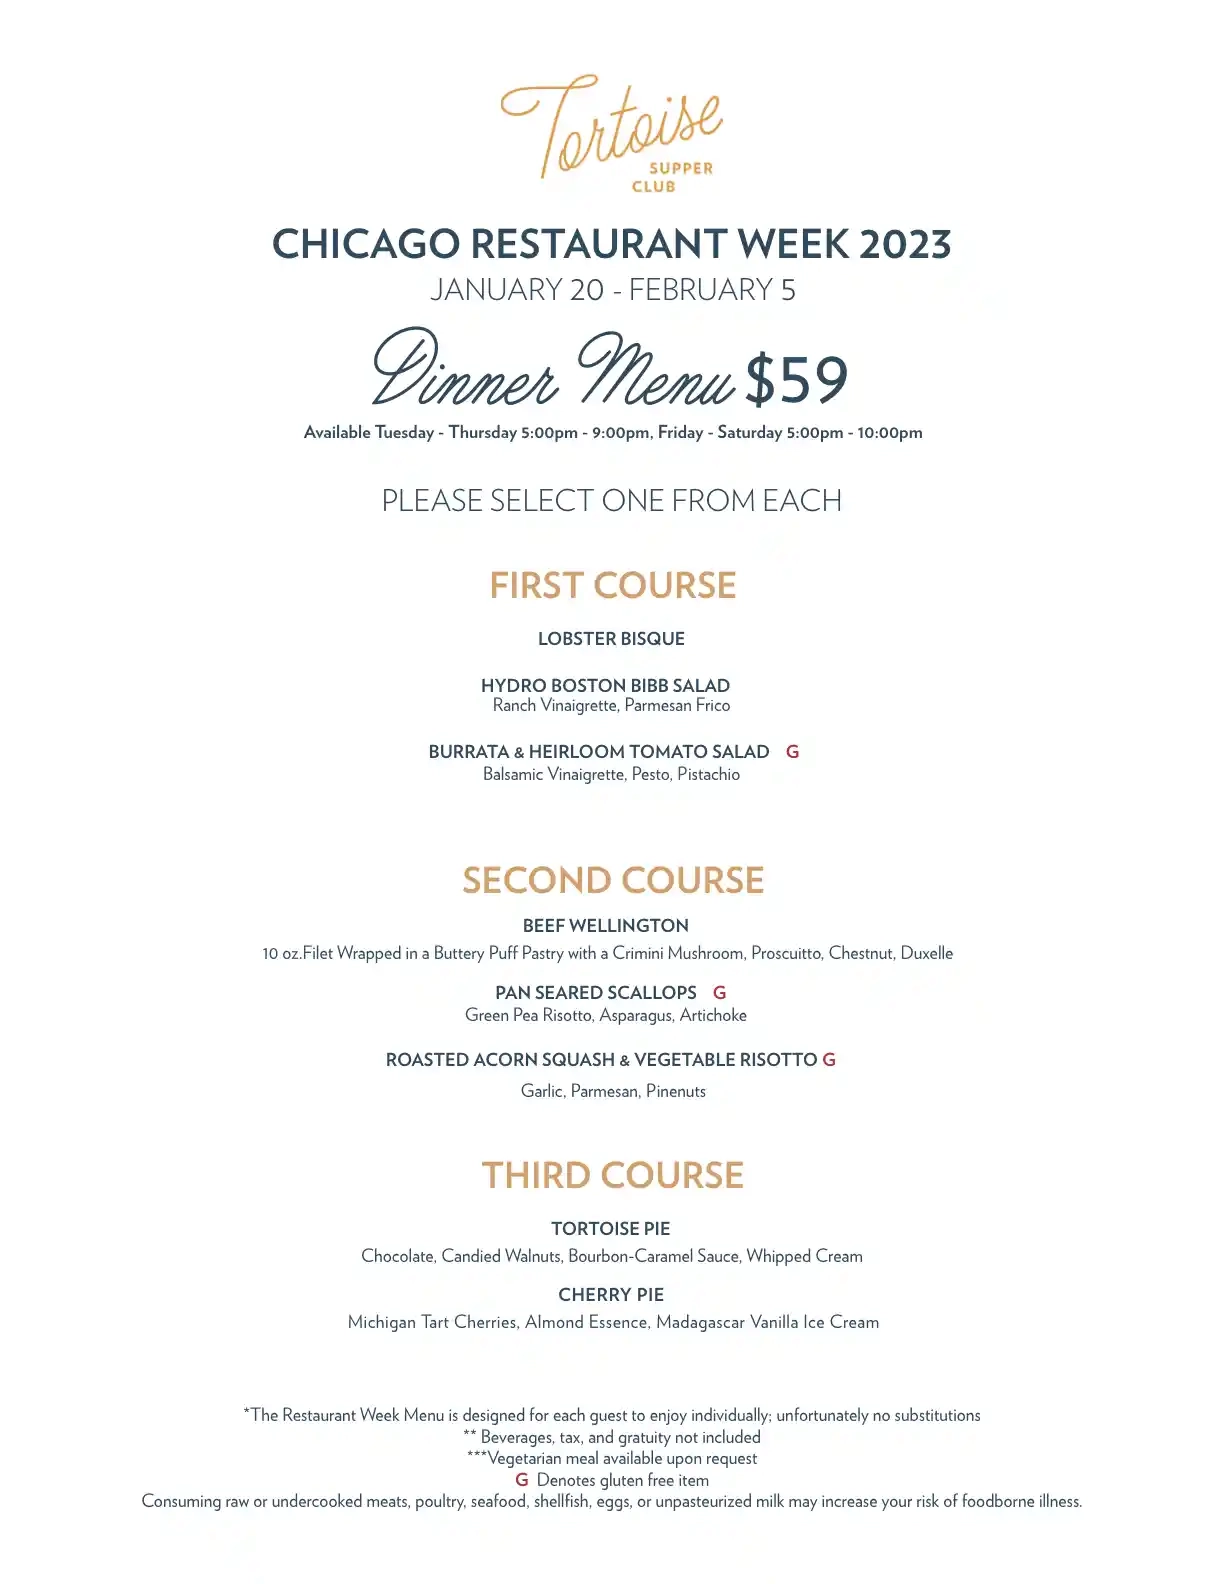 Chicago Restaurant Week 2023 Menu Tortoise Supper Club